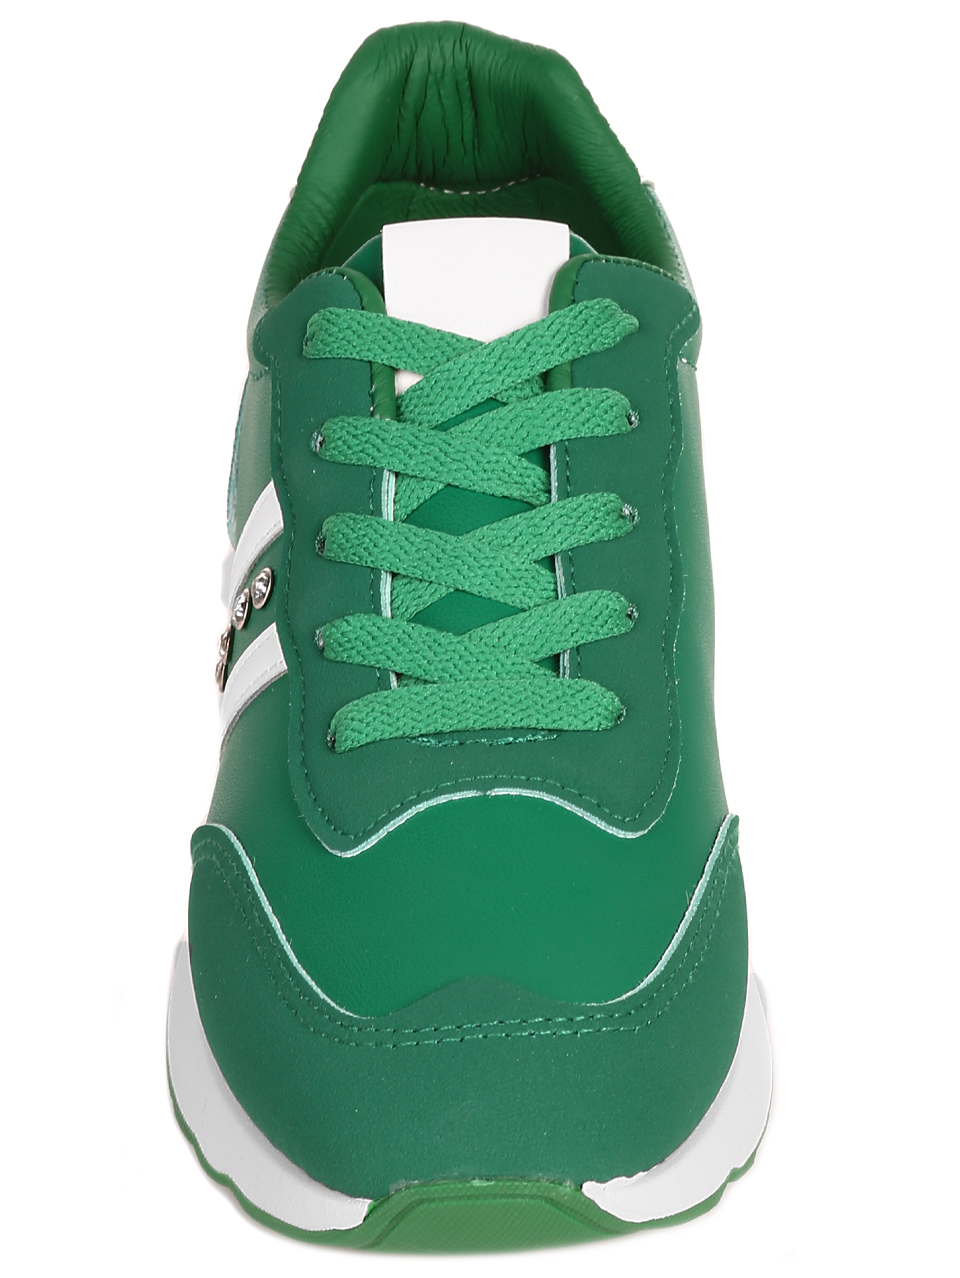 Ежедневни дамски комфортни обувки в зелено 3U-23059 green